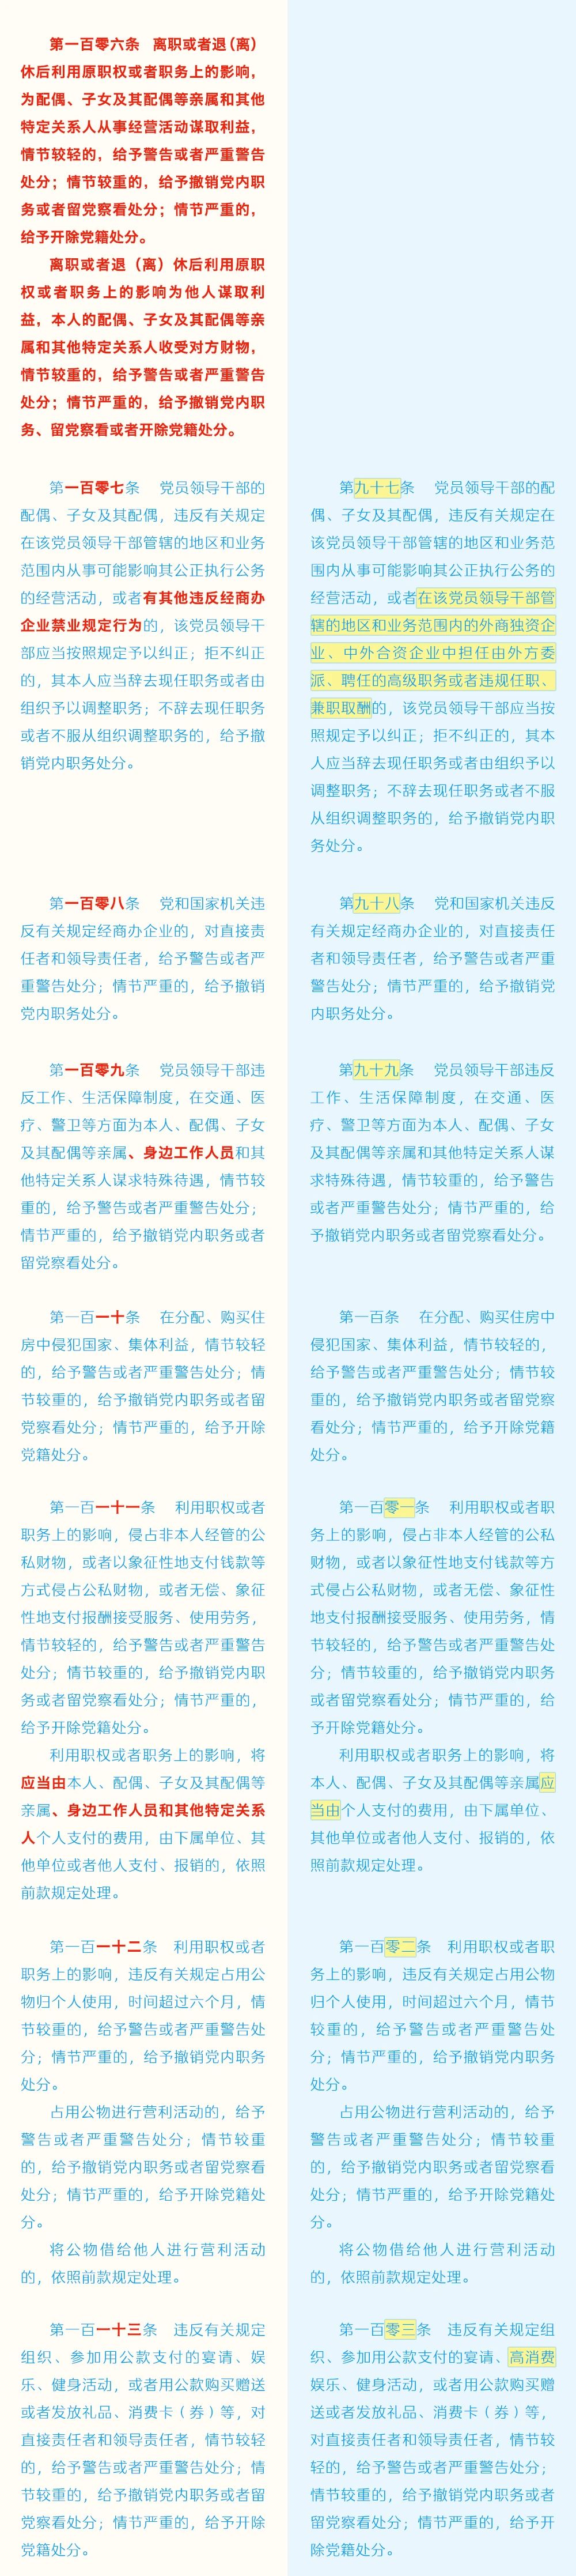 《中国共产党纪律处分条例》修订条文对照表16.jpg